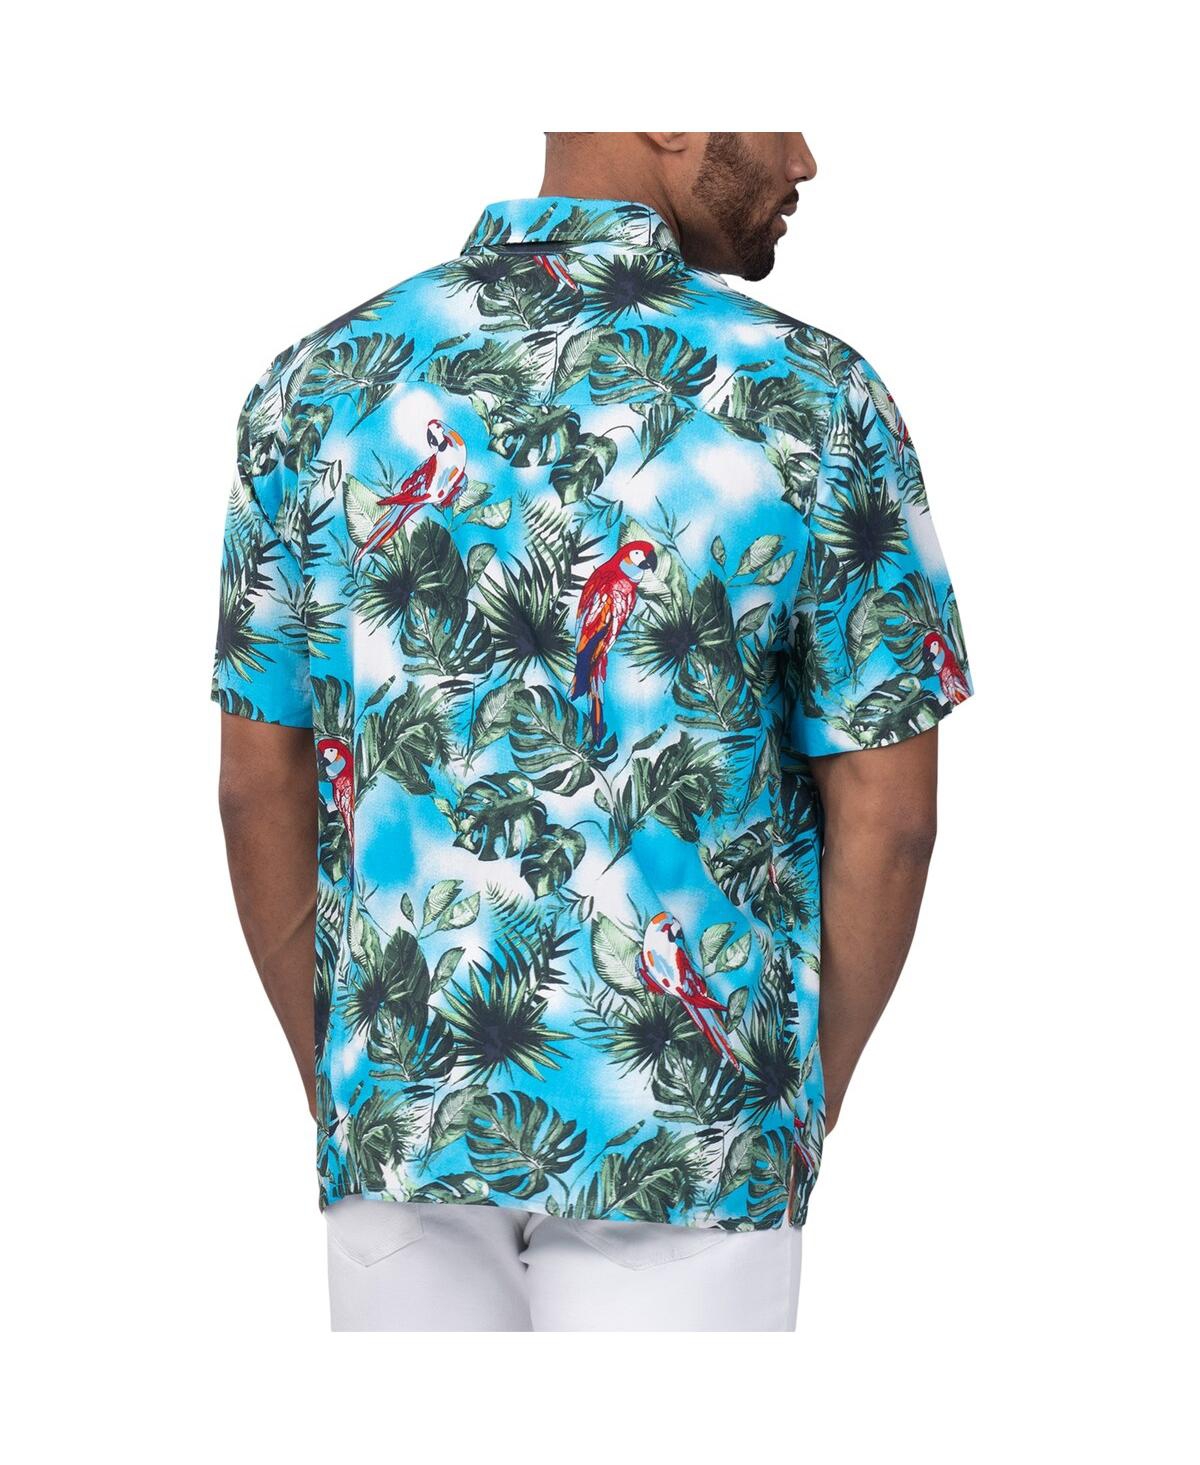 Shop Margaritaville Men's  Light Blue Las Vegas Raiders Jungle Parrot Party Button-up Shirt